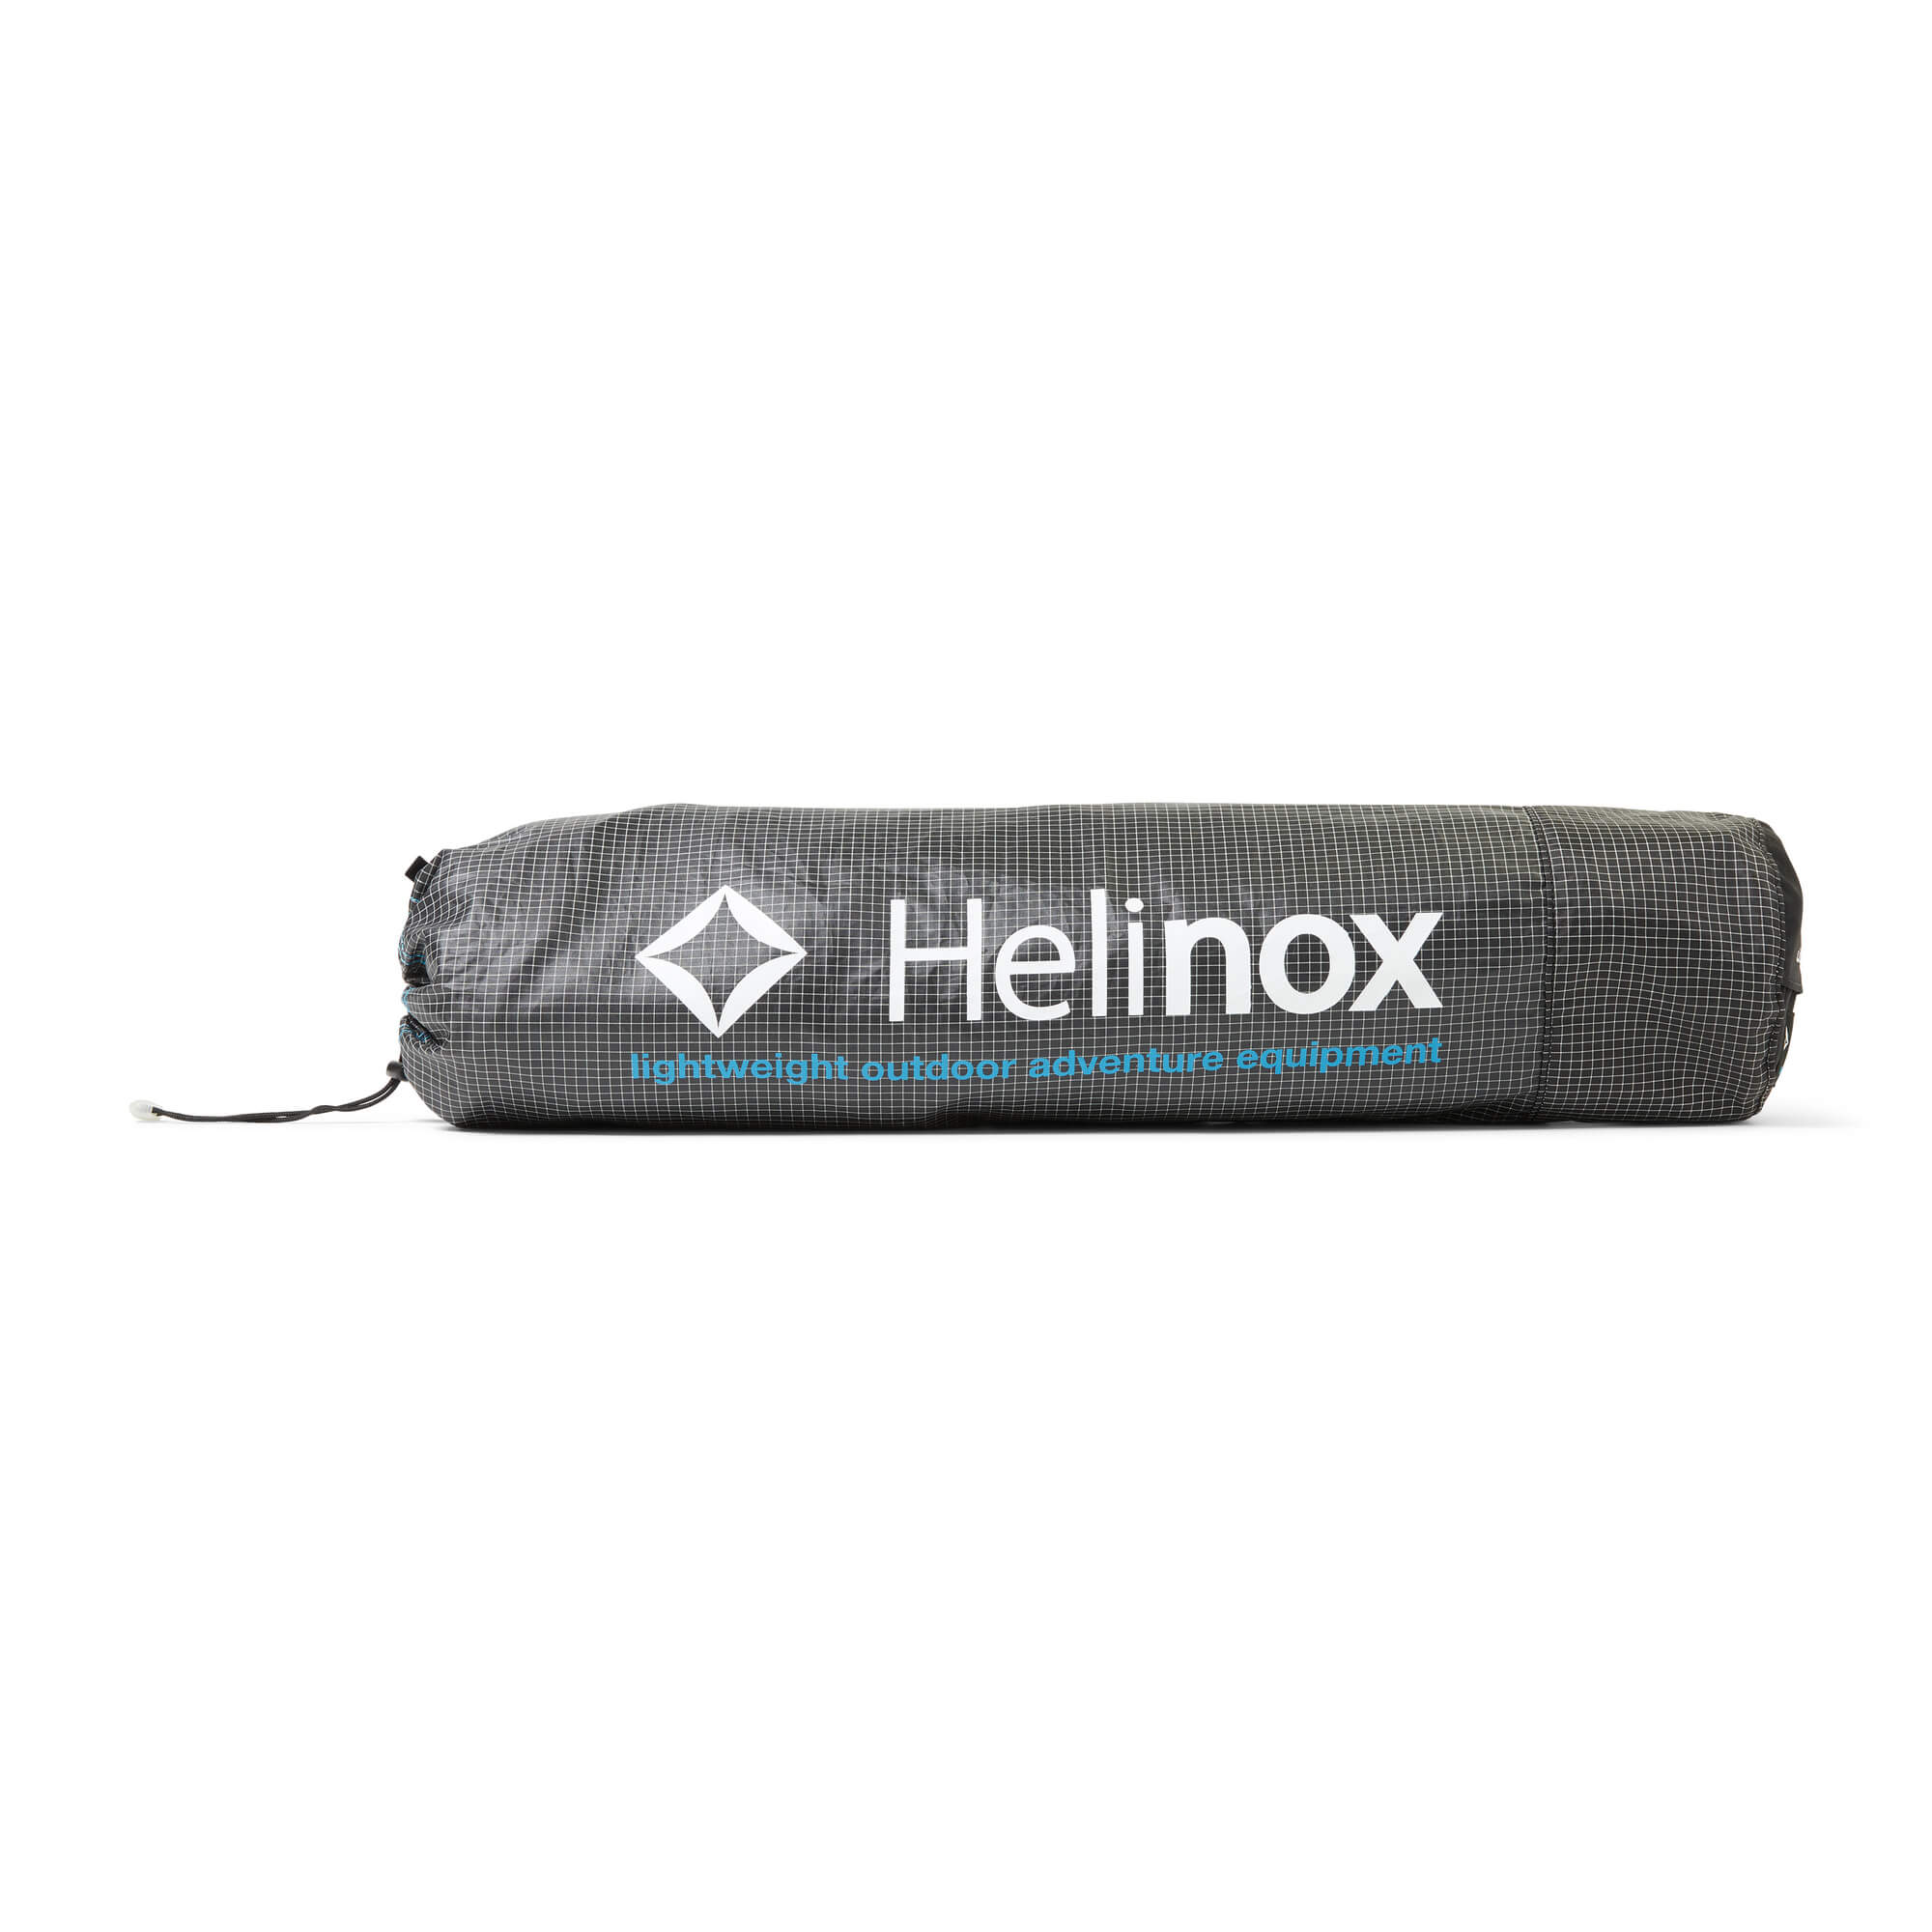 Helinox Lite Cot | Free Shipping & 5 Year Warranty